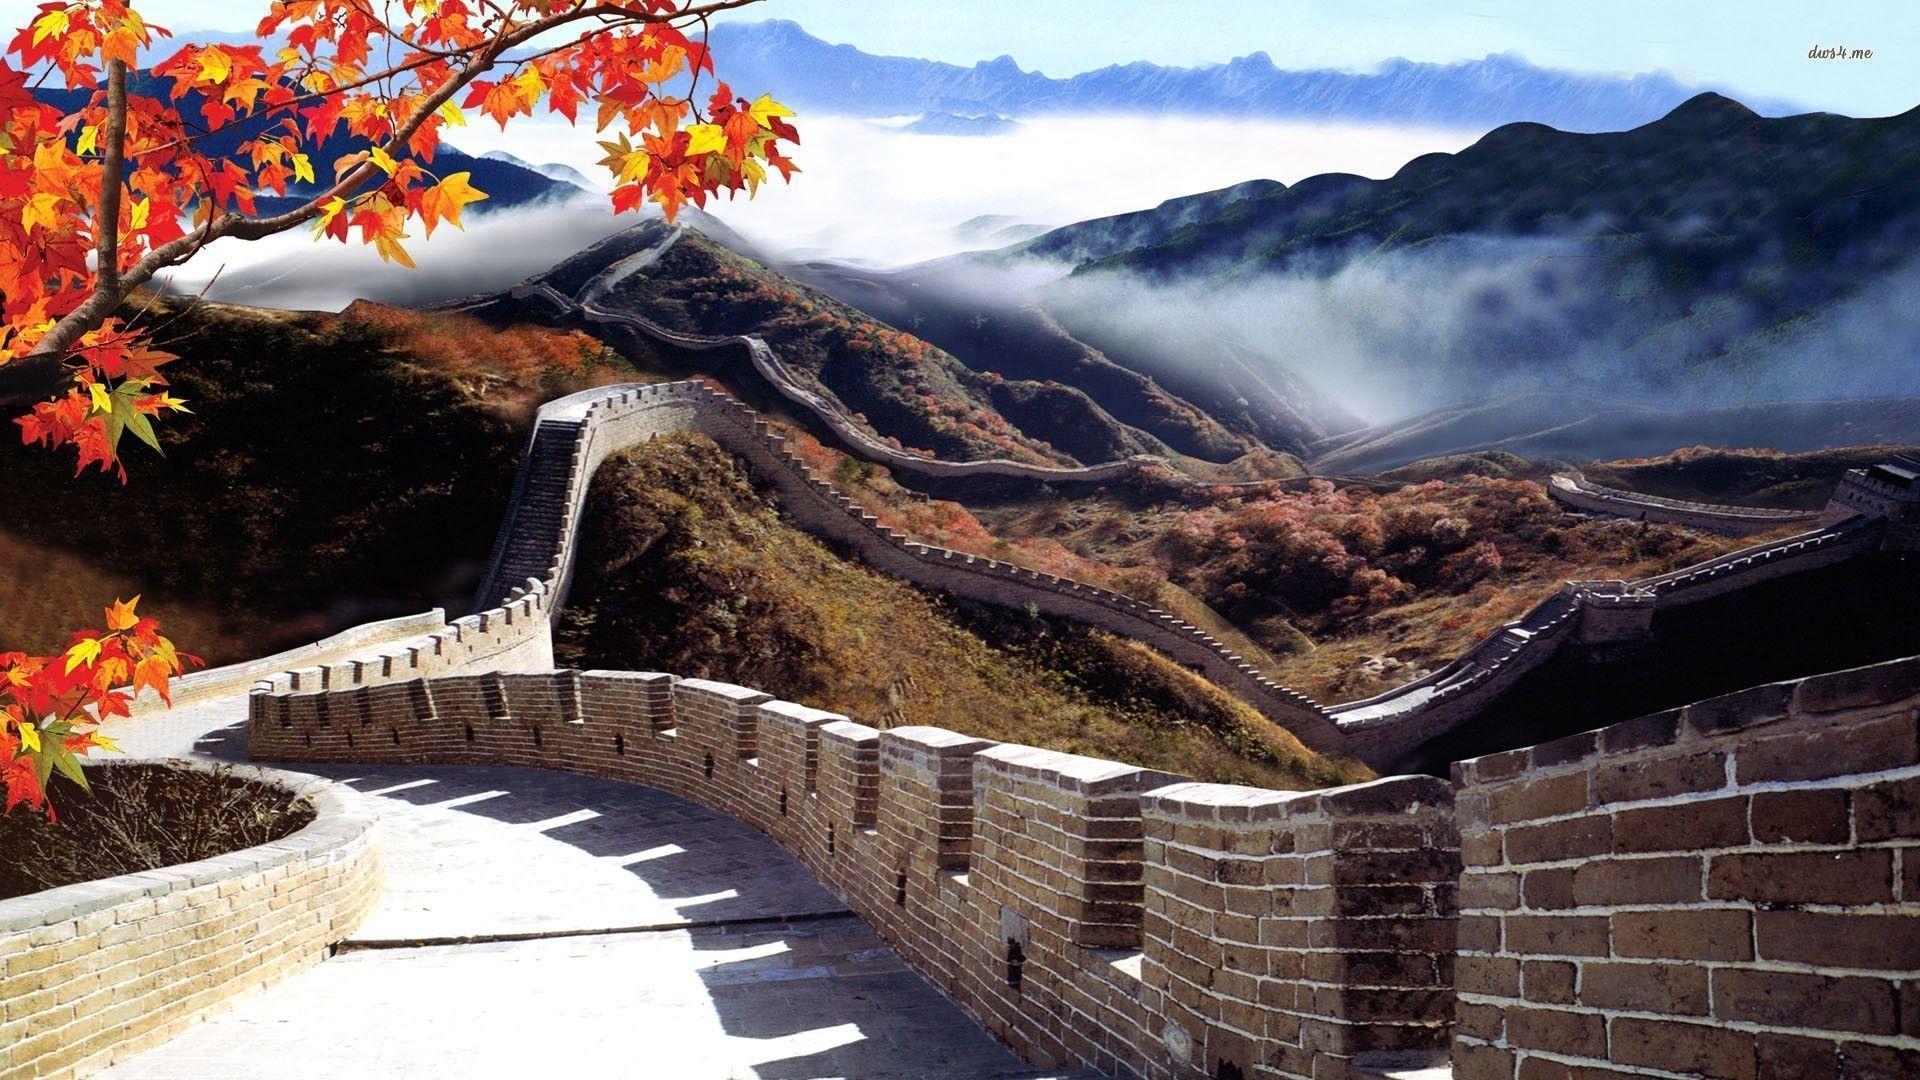 19801 Great Wall Of China 1920